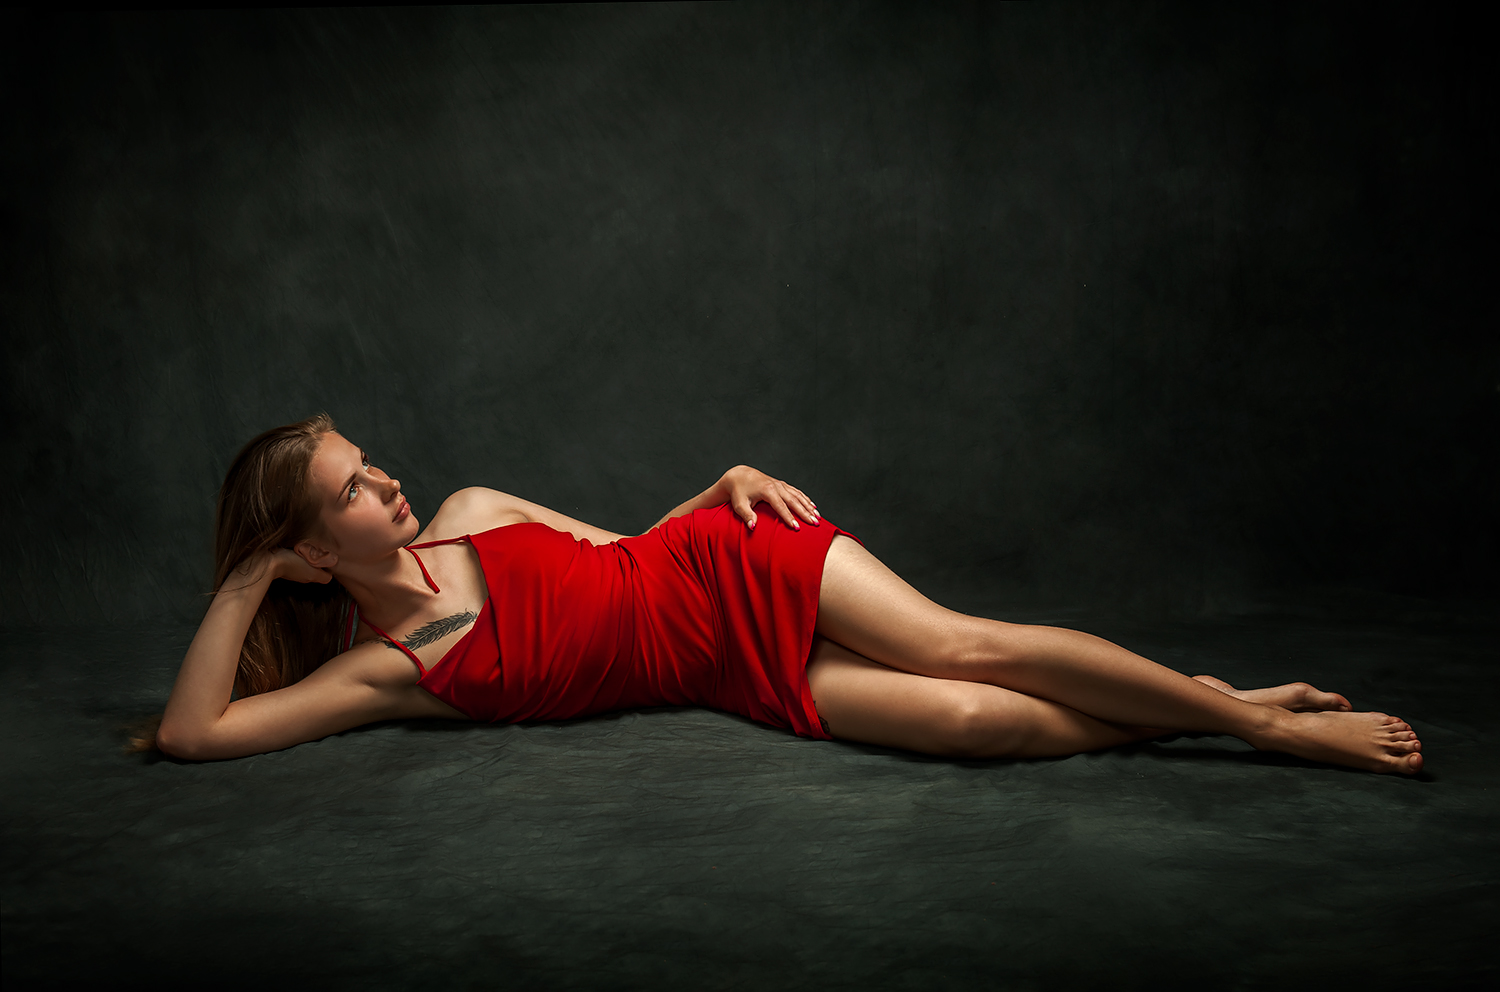 Sergey Bugs Women Brunette Red Dress Looking Away Studio 1500x992